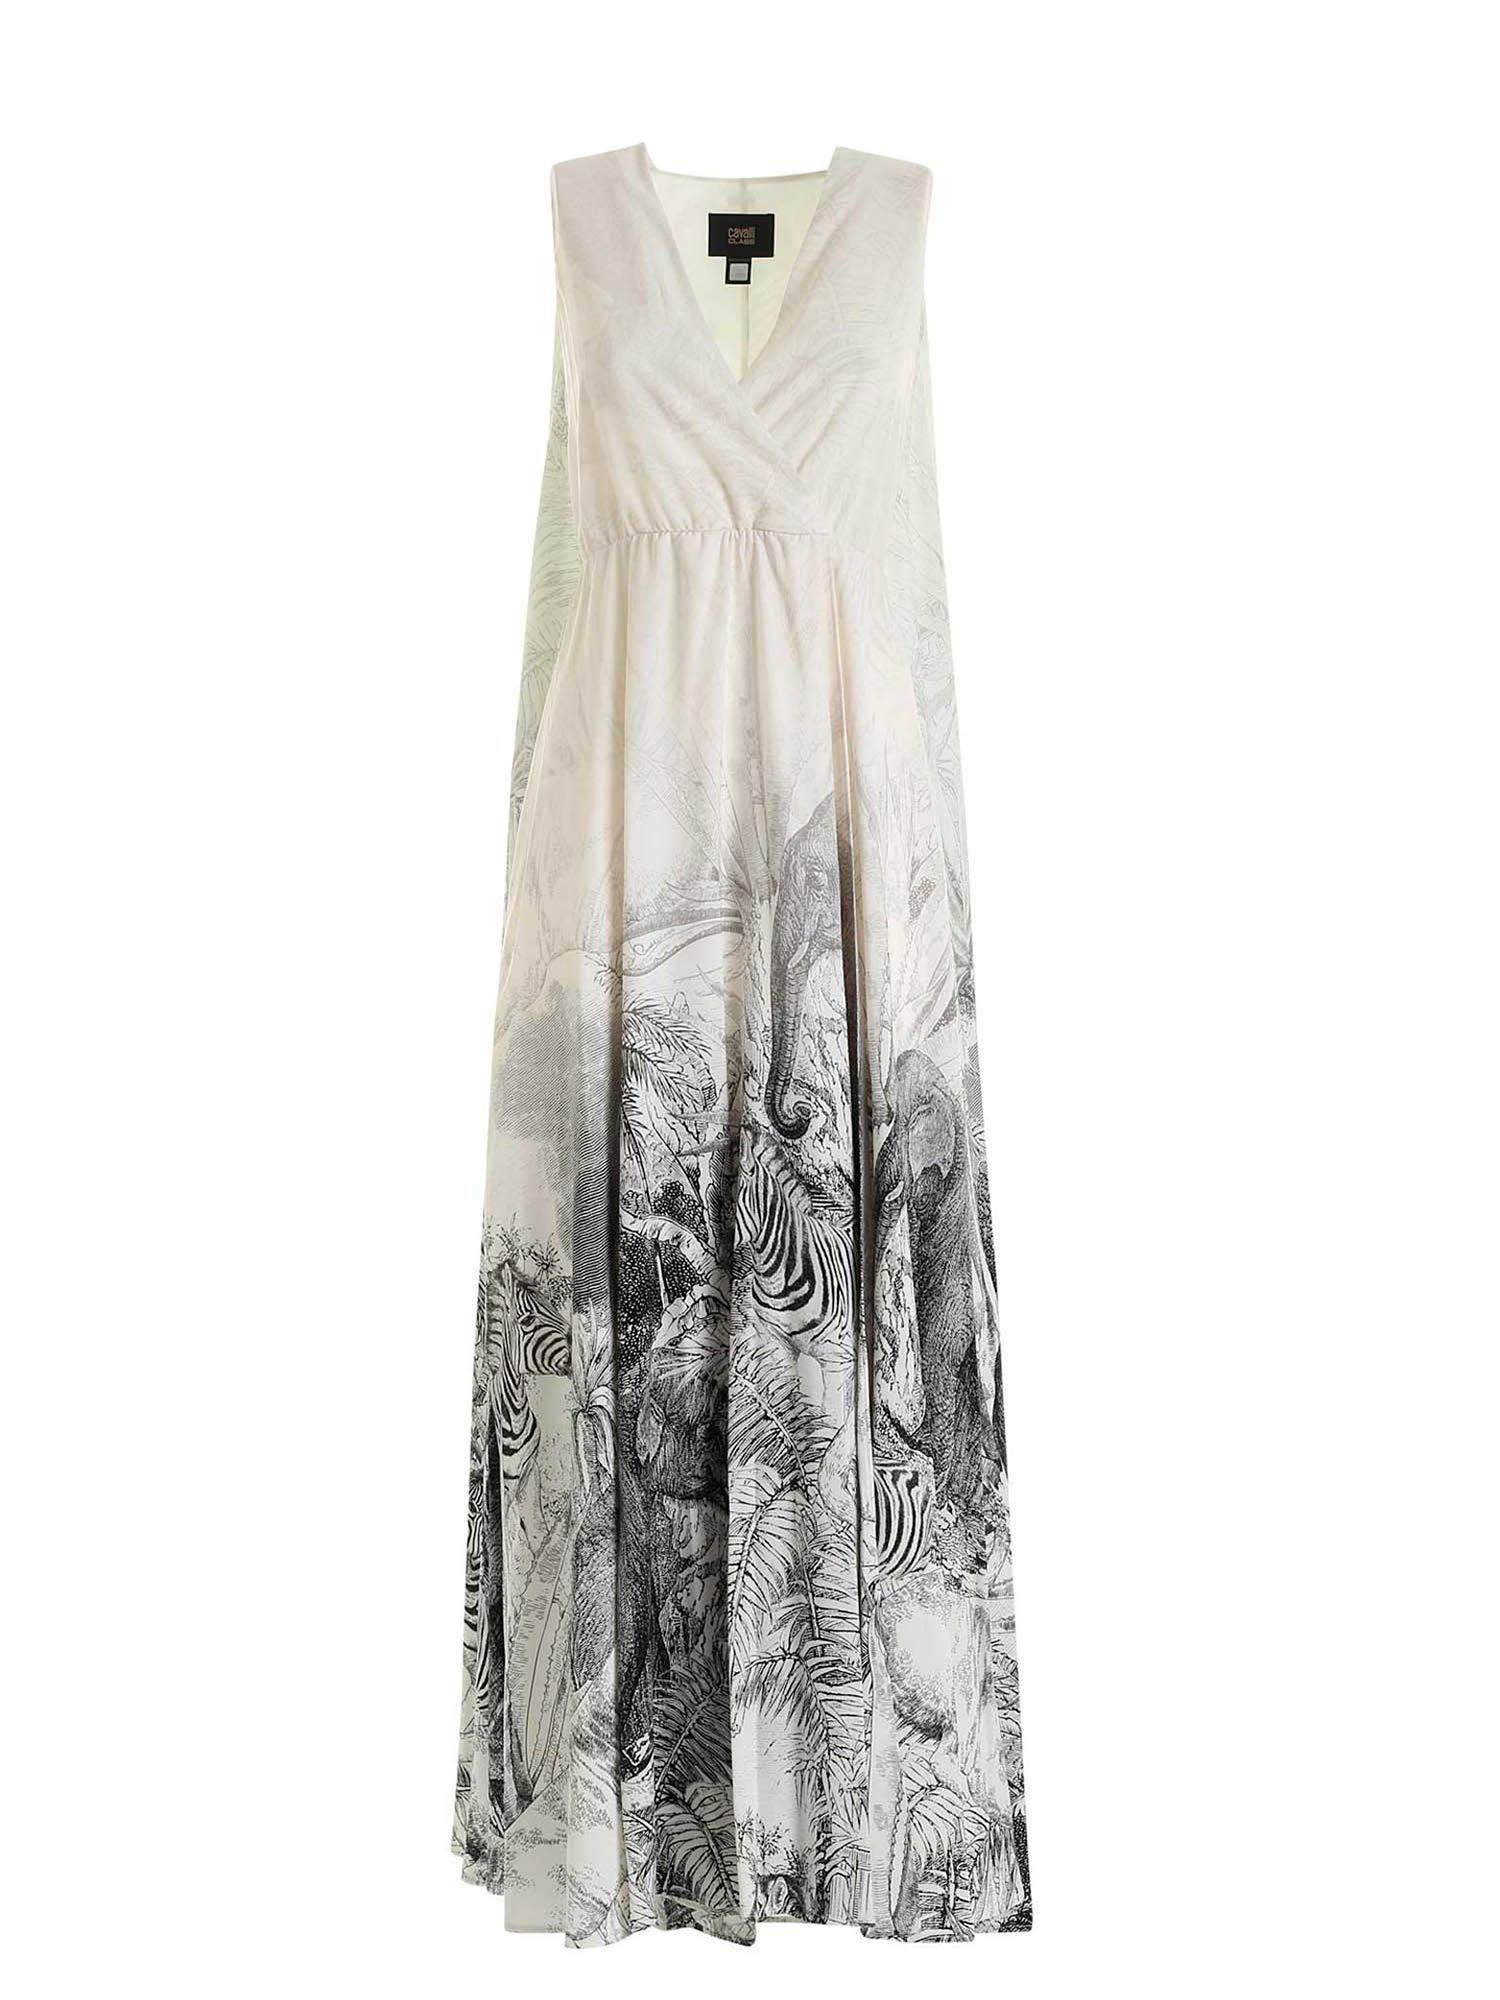 Class Roberto Cavalli Jungle Piazzato Print Dress in White - Lyst